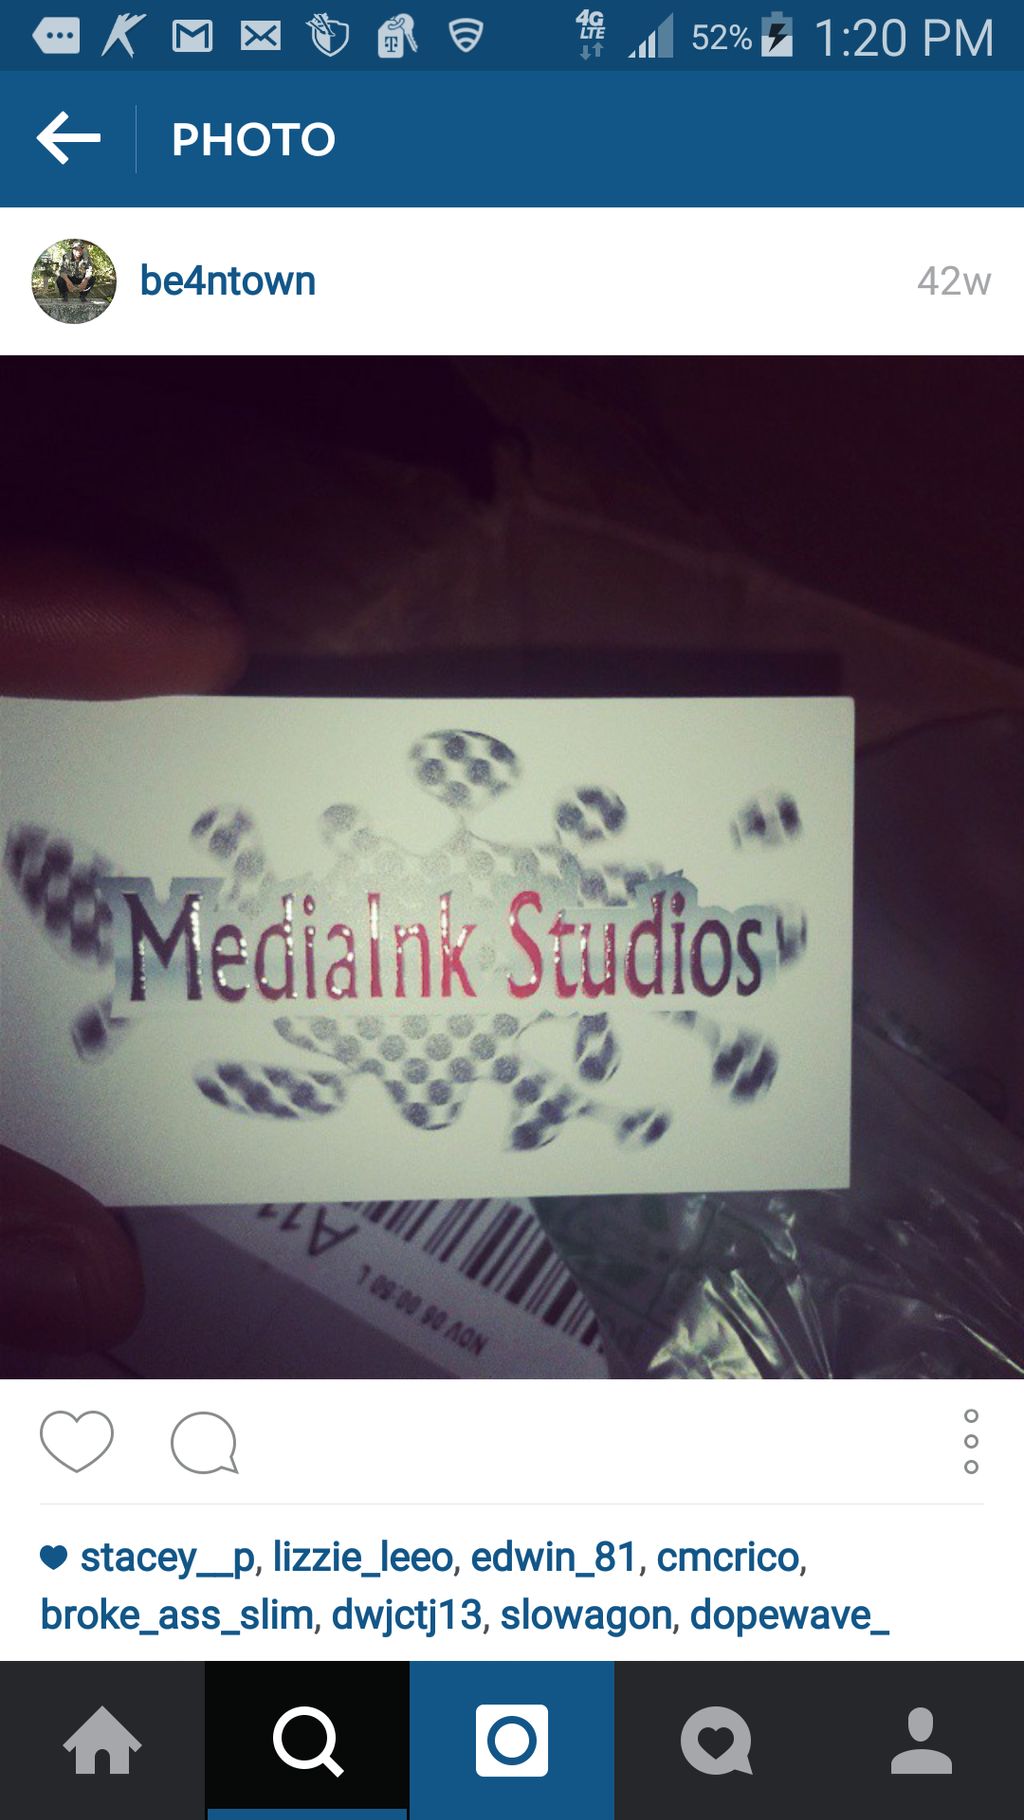 MediaInk Studios